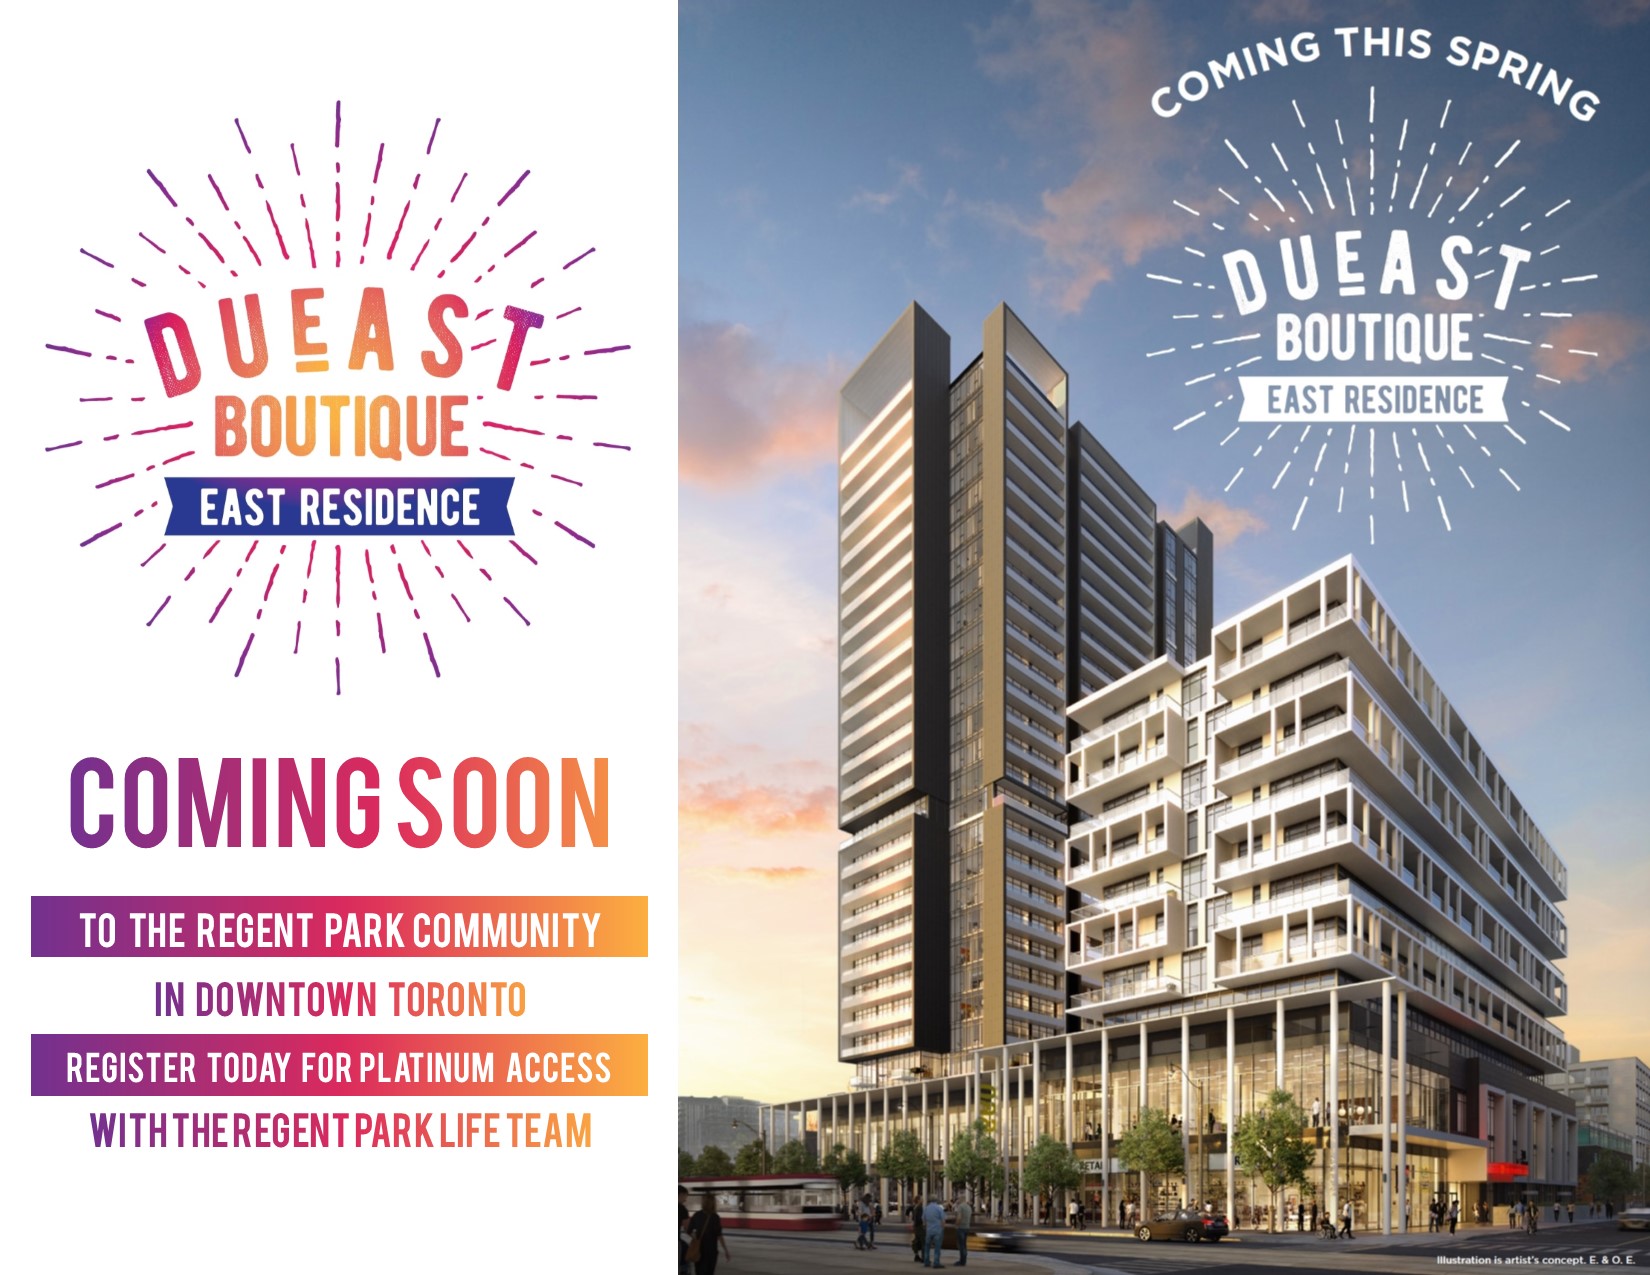 DuEast Boutique Condos by Daniels in Regent Park - Platinum Access - Regent Park Life Team